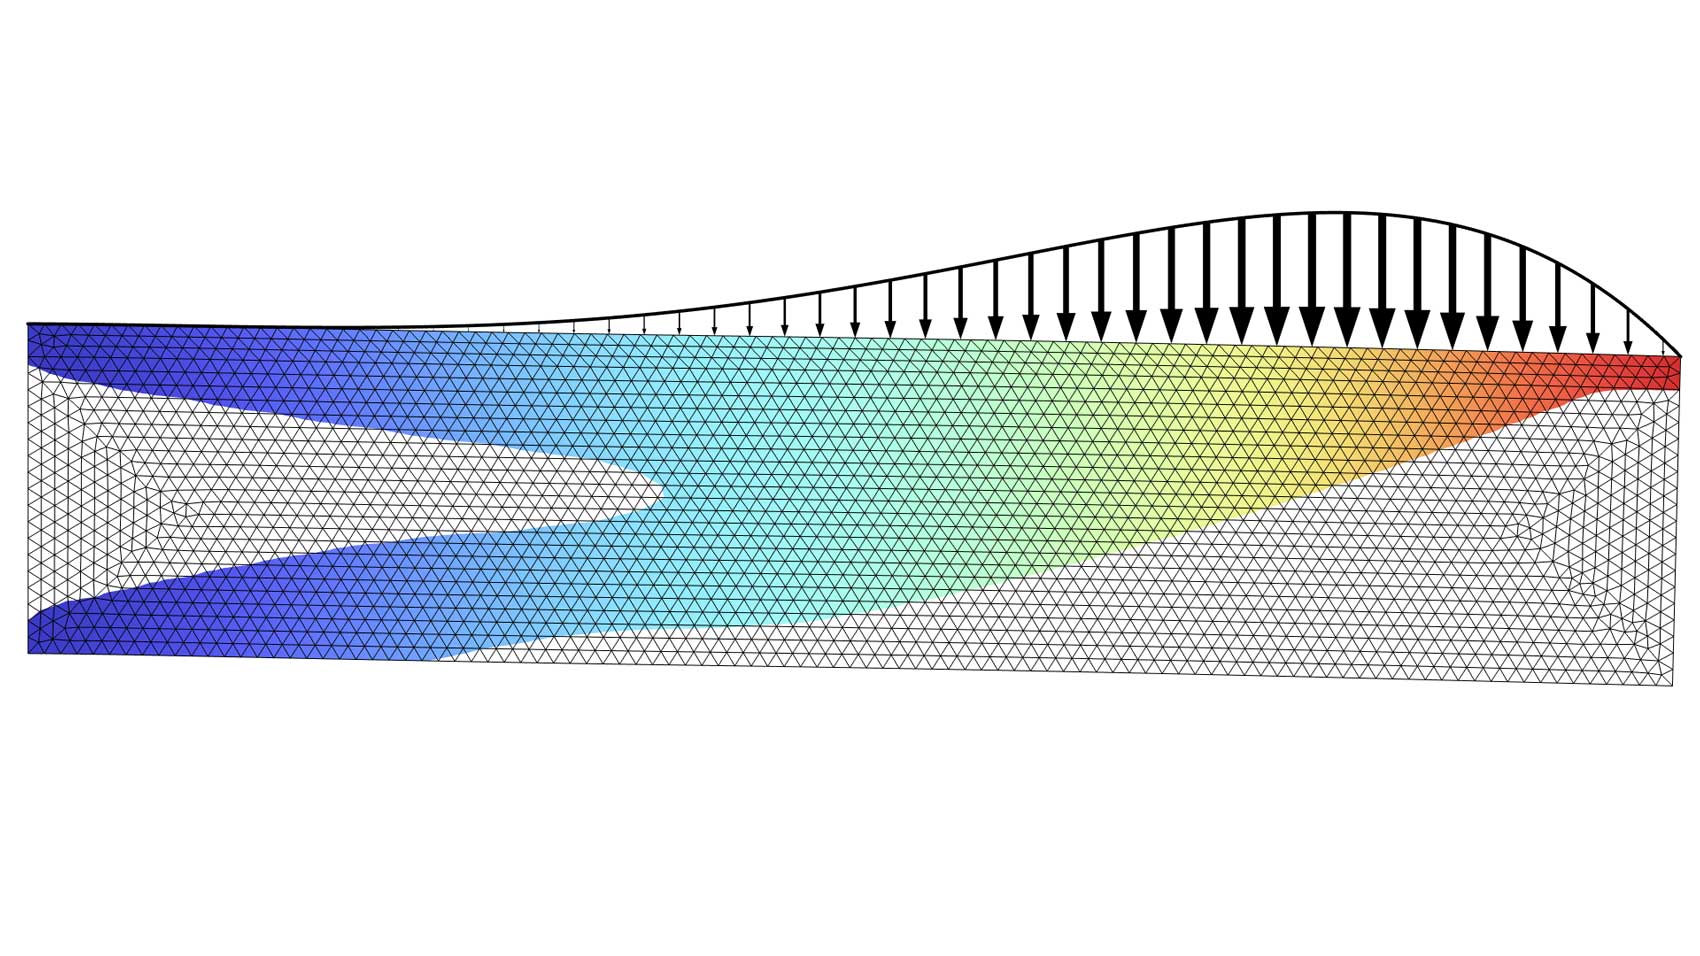 以 Rainbow Light 颜色表显示的矩形梁模型，其中带有黑色箭头。